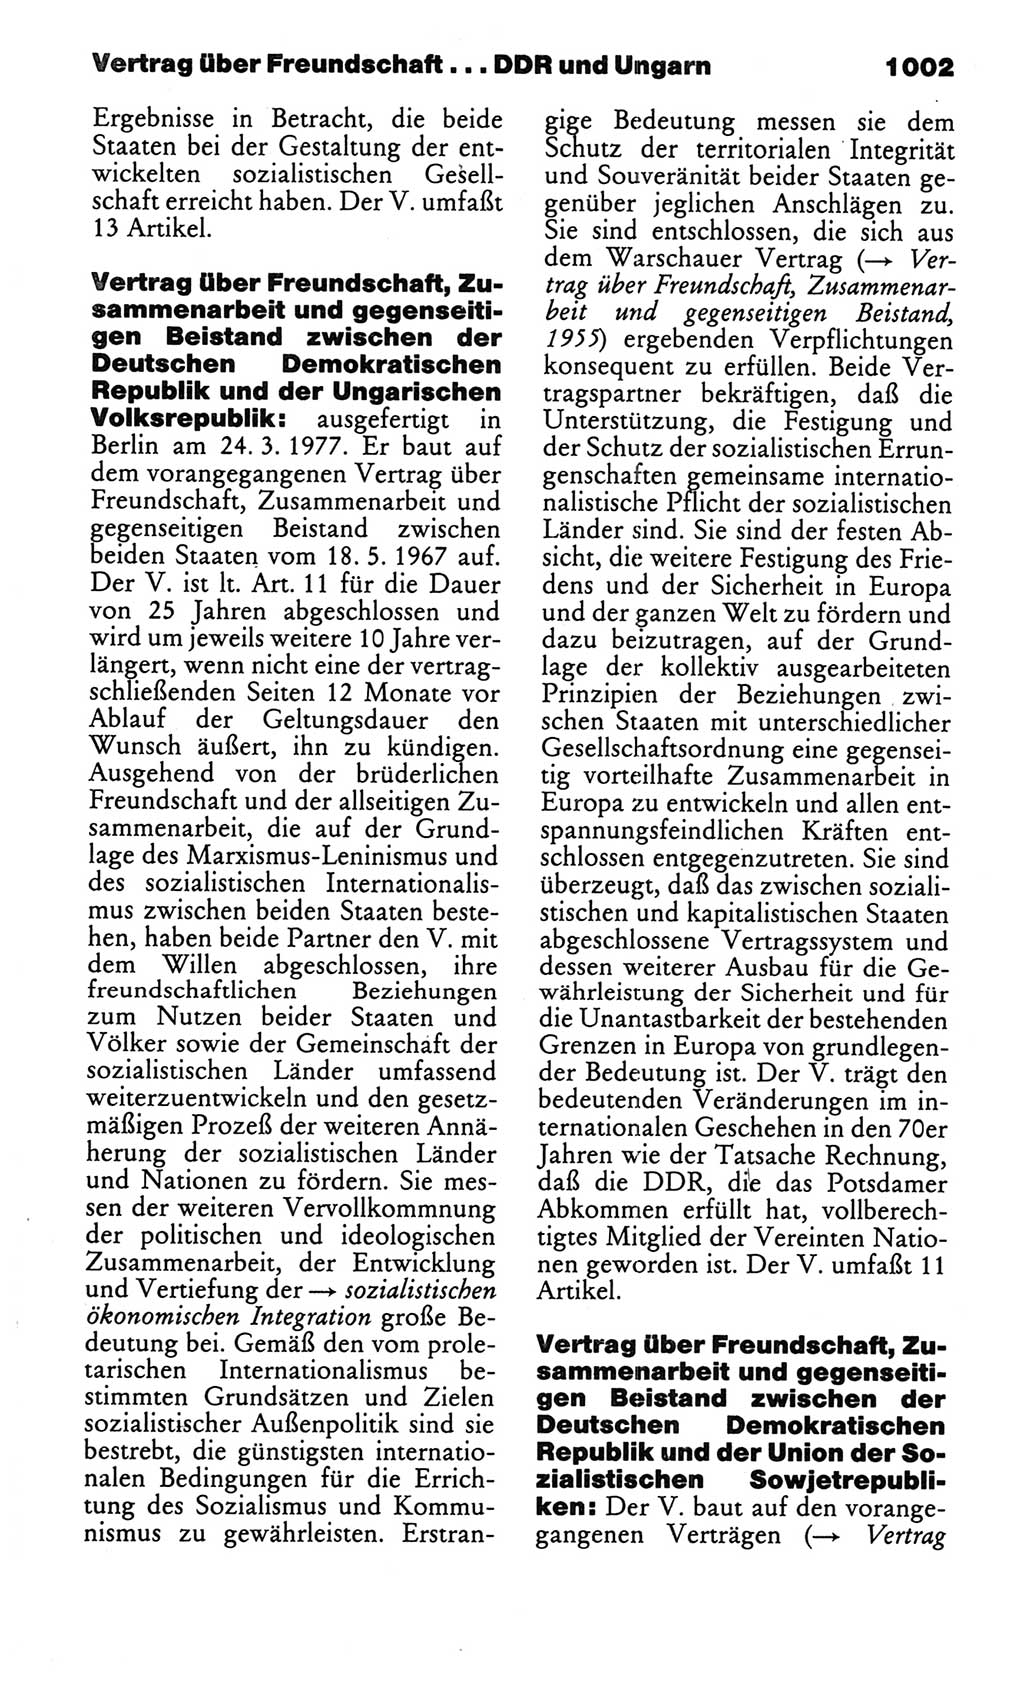 Kleines politisches Wörterbuch [Deutsche Demokratische Republik (DDR)] 1986, Seite 1002 (Kl. pol. Wb. DDR 1986, S. 1002)